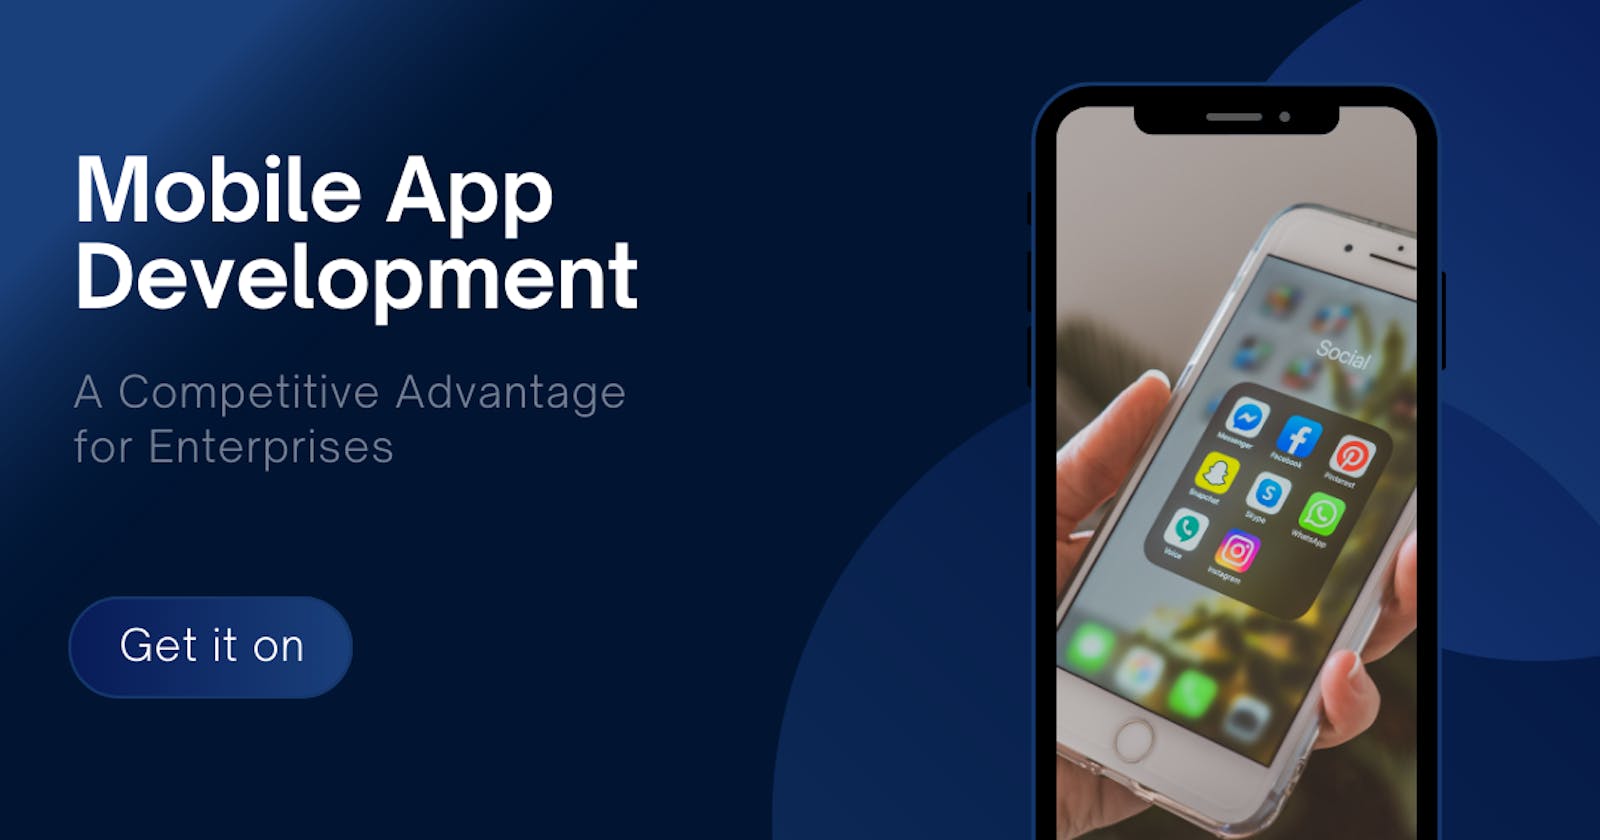 Mobile App Development - A Competitive Advantage for Enterprises